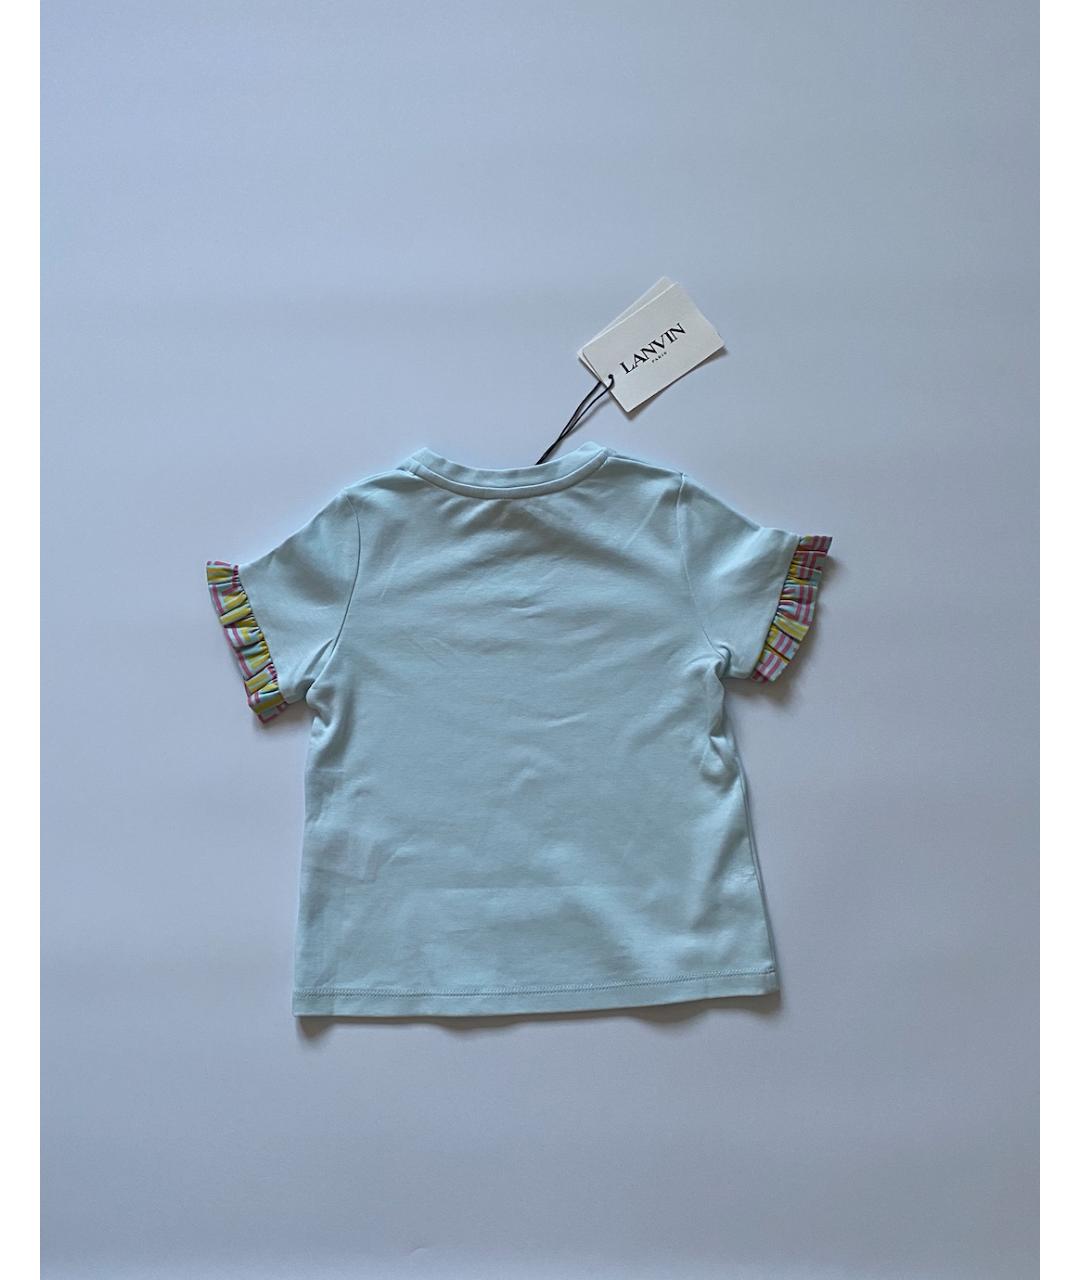 LANVIN Голубой хлопковый детская футболка / топ, фото 3